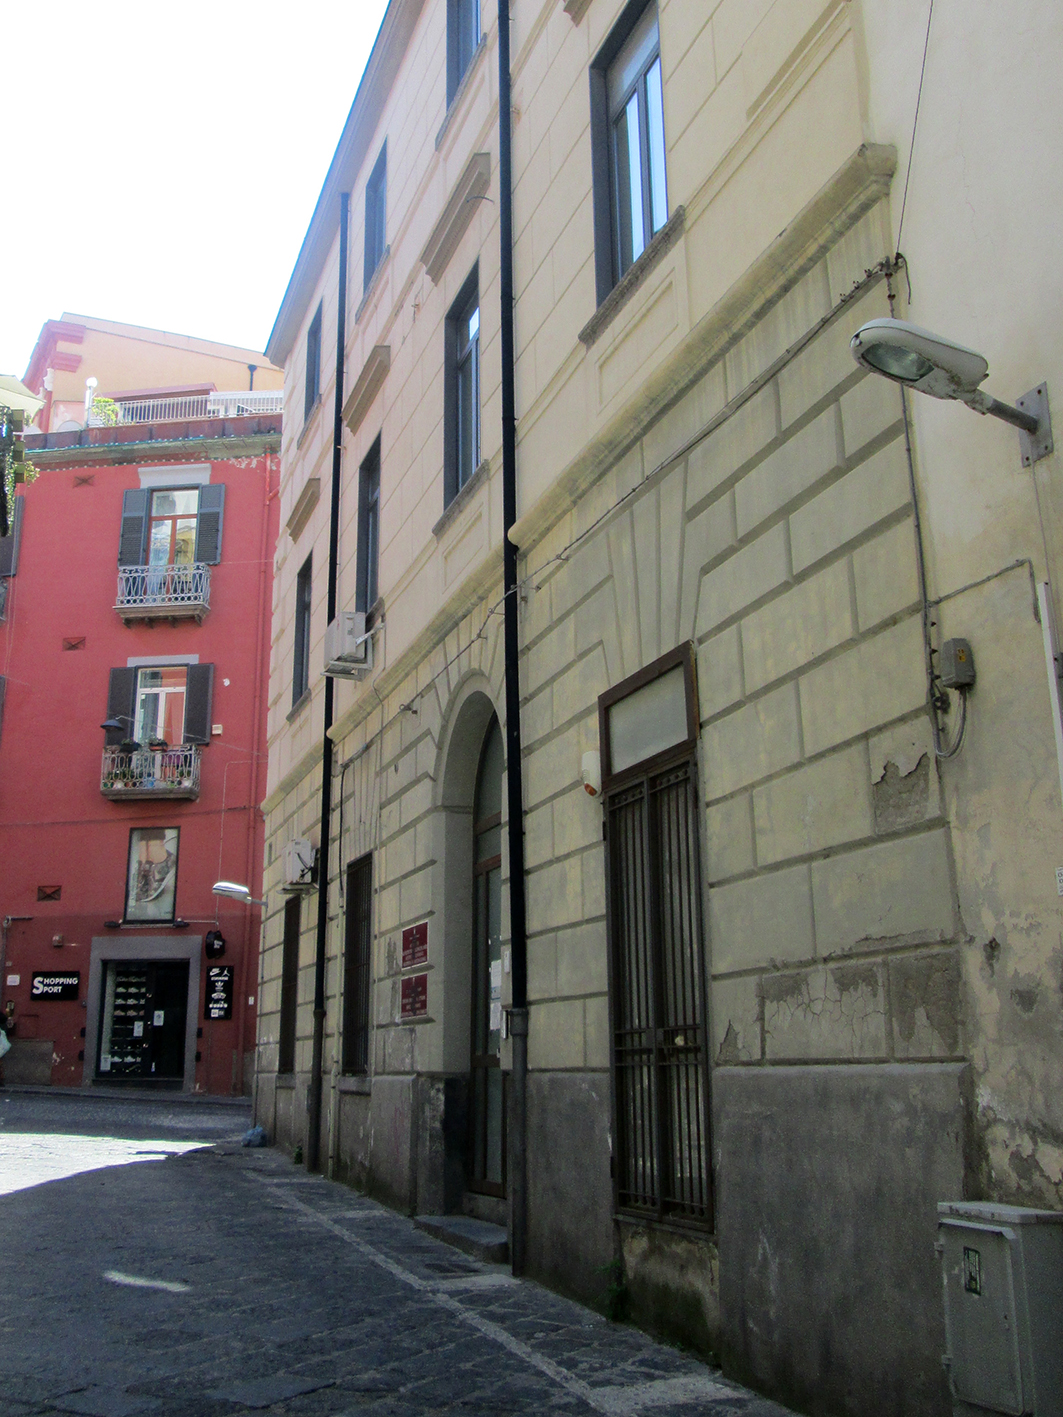 Ufficio dei Vigili Urbani (ex) (palazzo, comunale) - Pozzuoli (NA) 